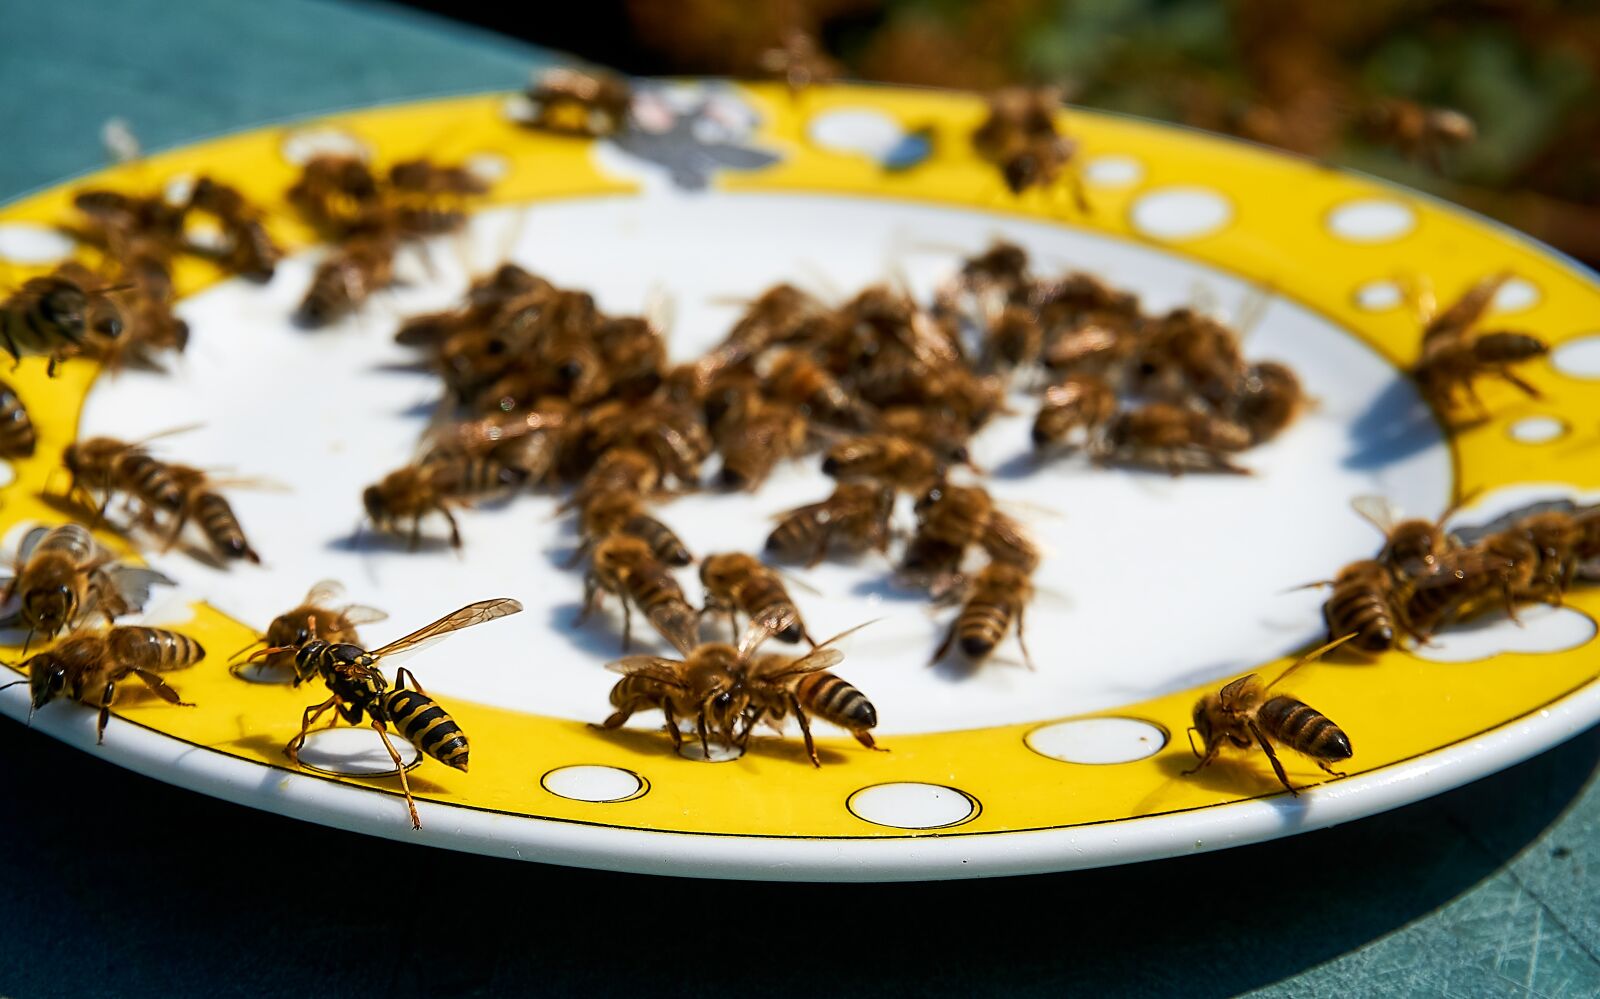 Sony a6000 sample photo. Bee, honey, feeding photography